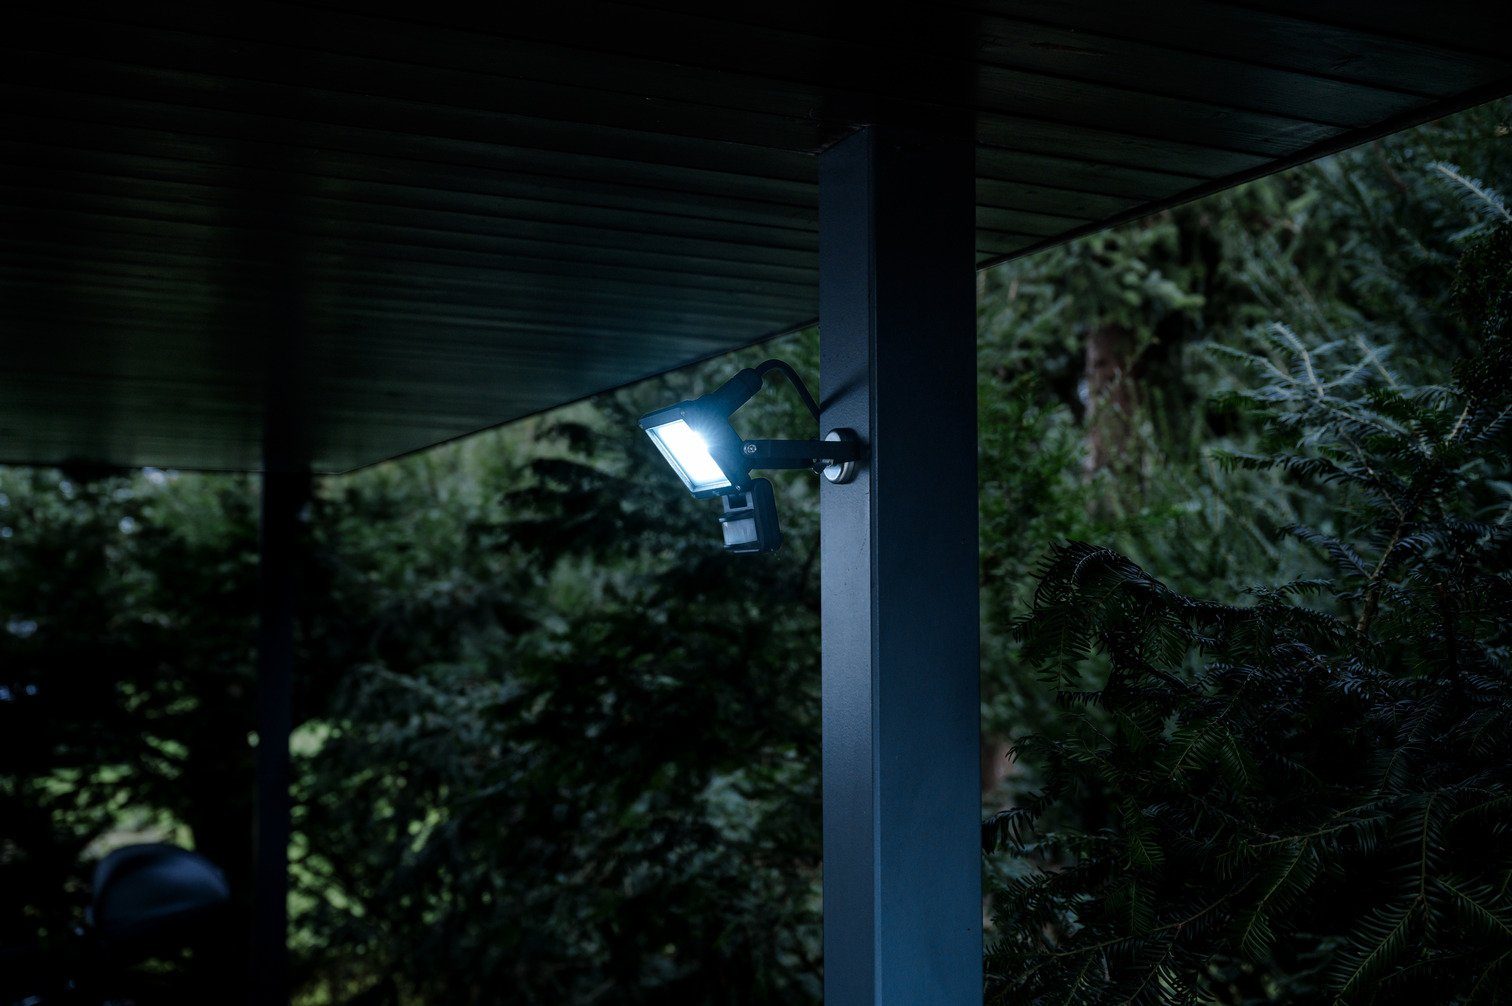 LED LED fest Brennenstuhl JARO Wandstrahler außen, mit integriert, Bewegungsmelder 1060 P, für